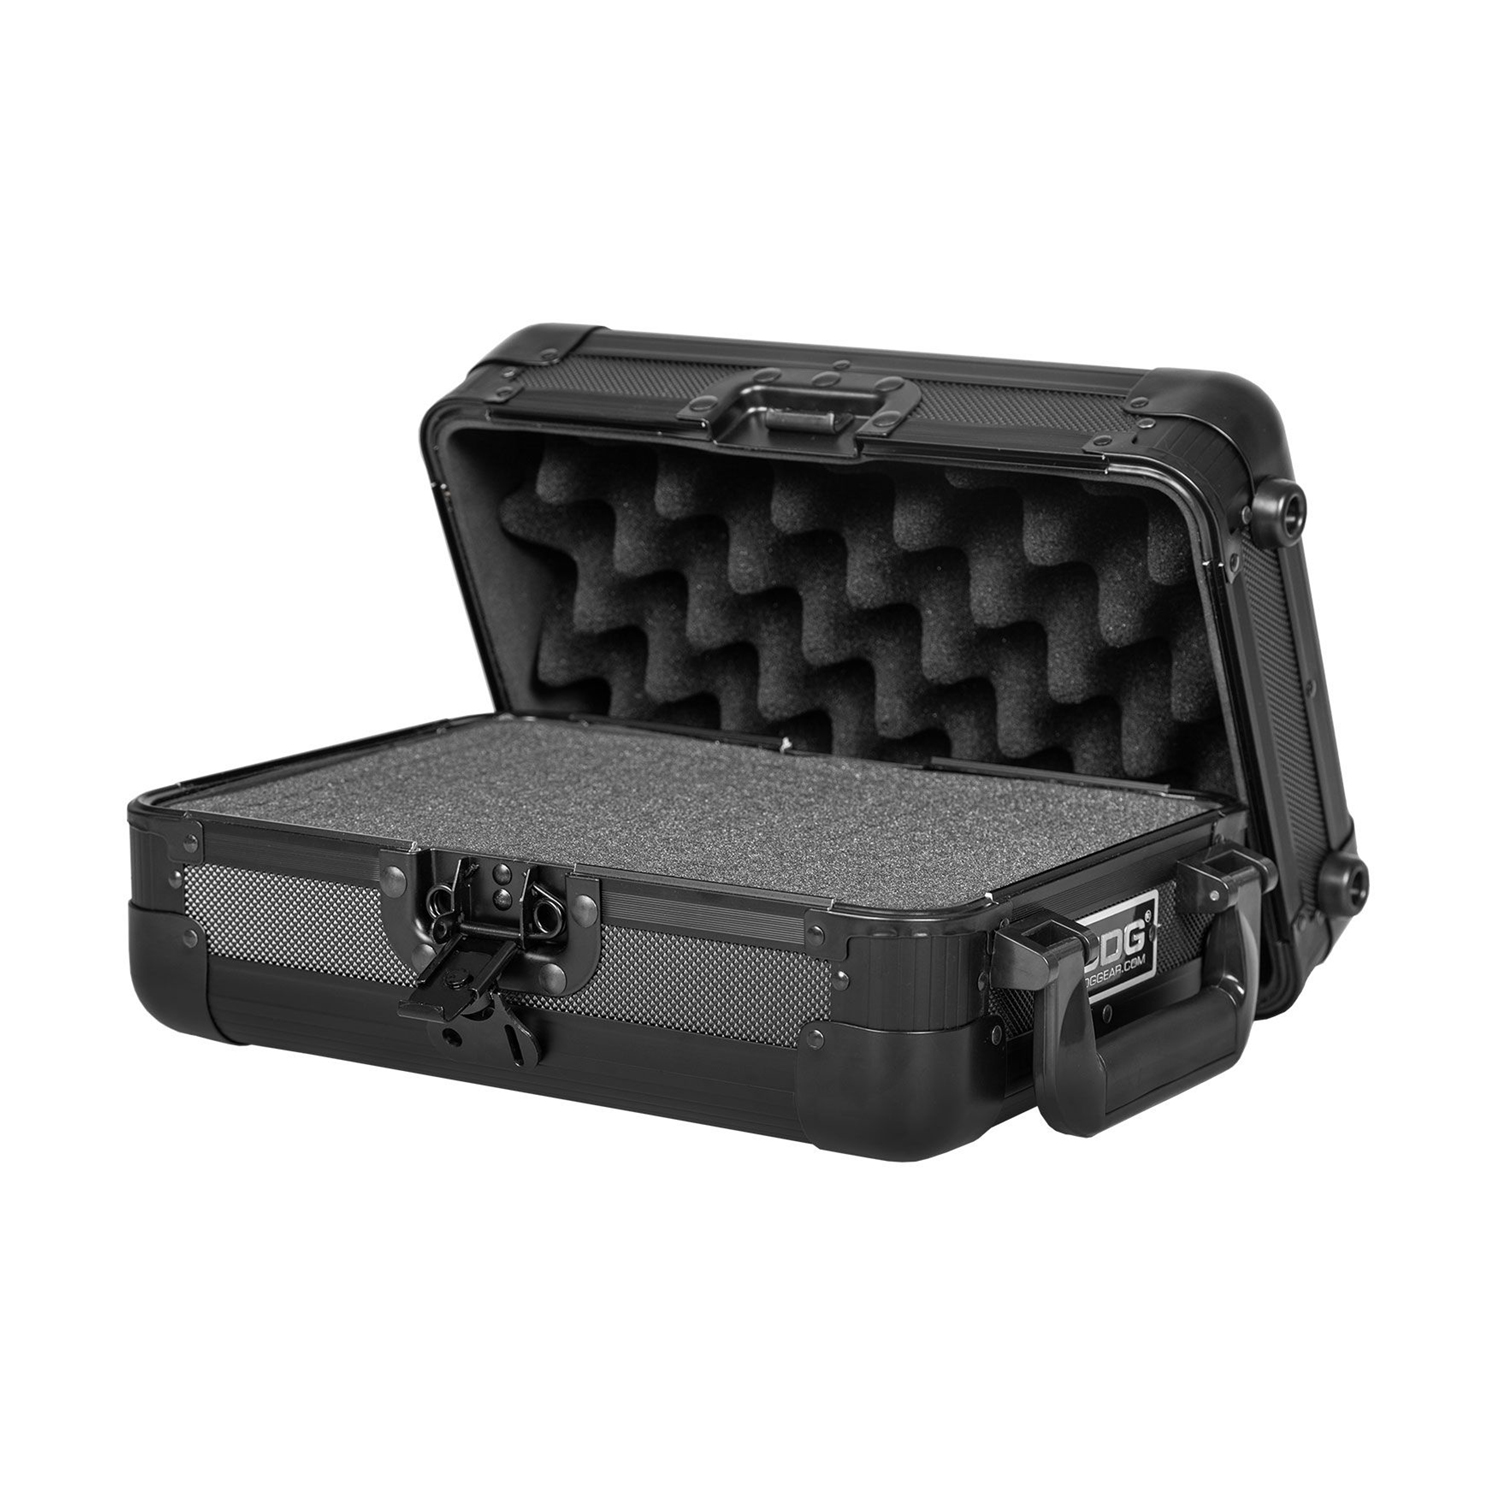 Udg U 93019 Bl (wolfmix) - Case & Bag for lighting equipment - Variation 2